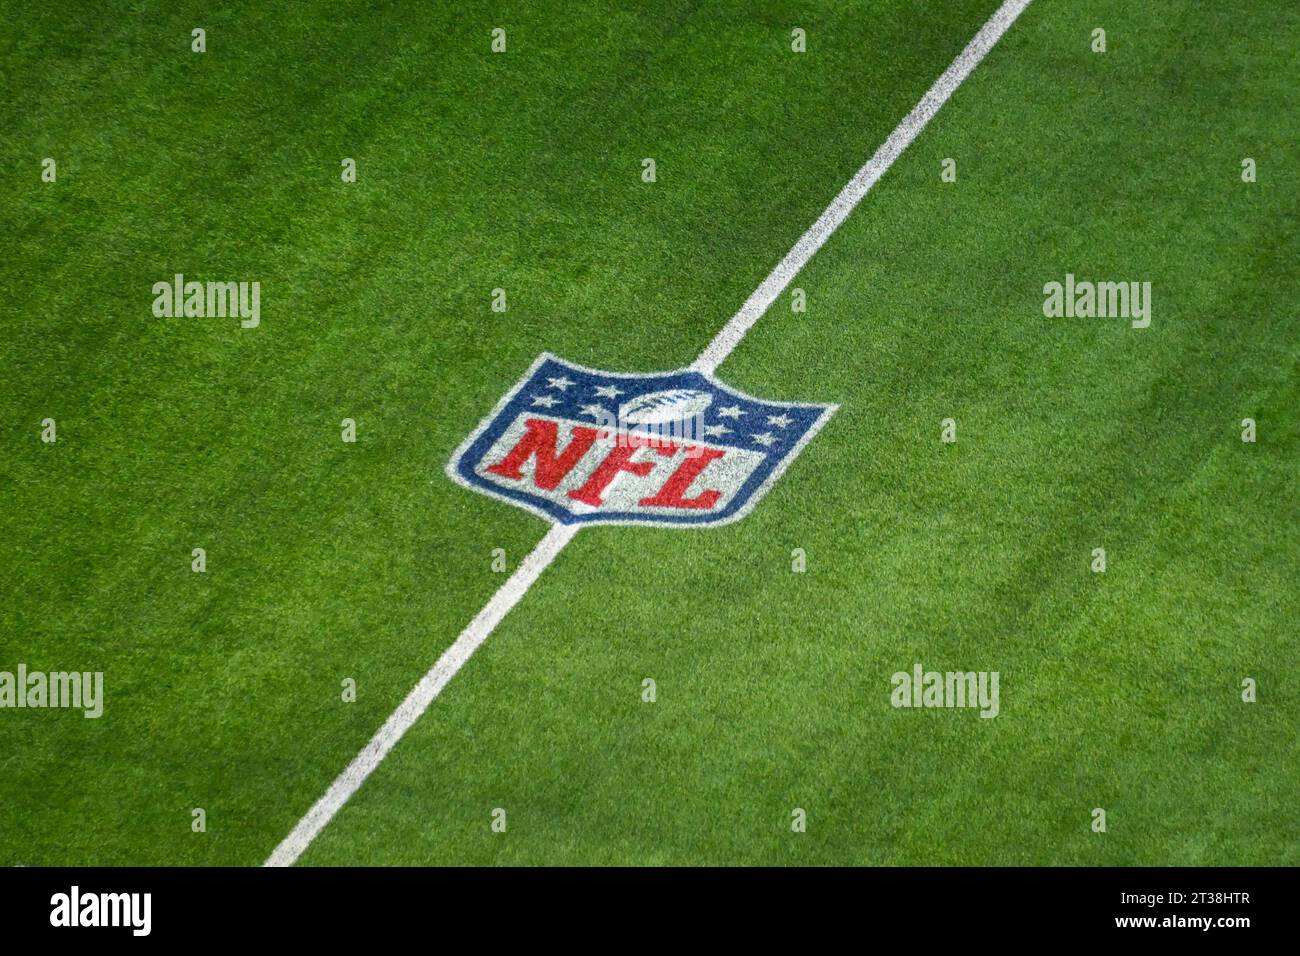 Vista generale dei loghi dei Los Angeles Rams al SoFi Stadium prima di una partita di football tra i Los Angeles Rams e i Pittsburgh Steelers, S. Foto Stock